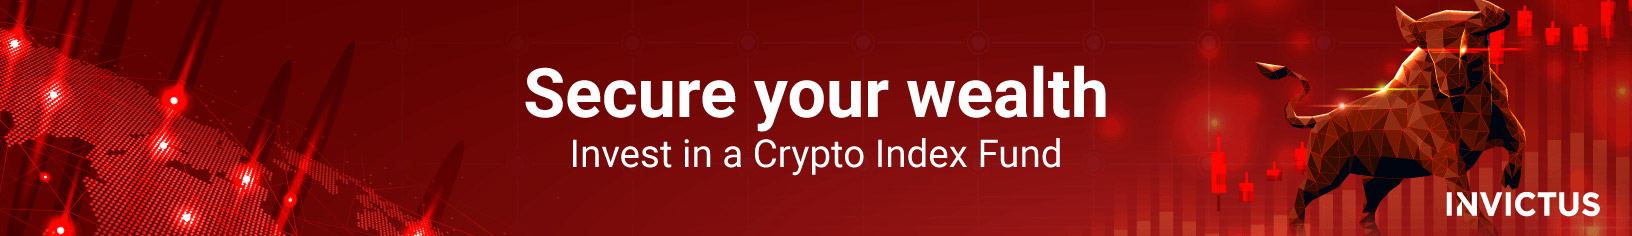 Sécurisez votre patrimoine: investissez dans un fonds d'indice cryptographique